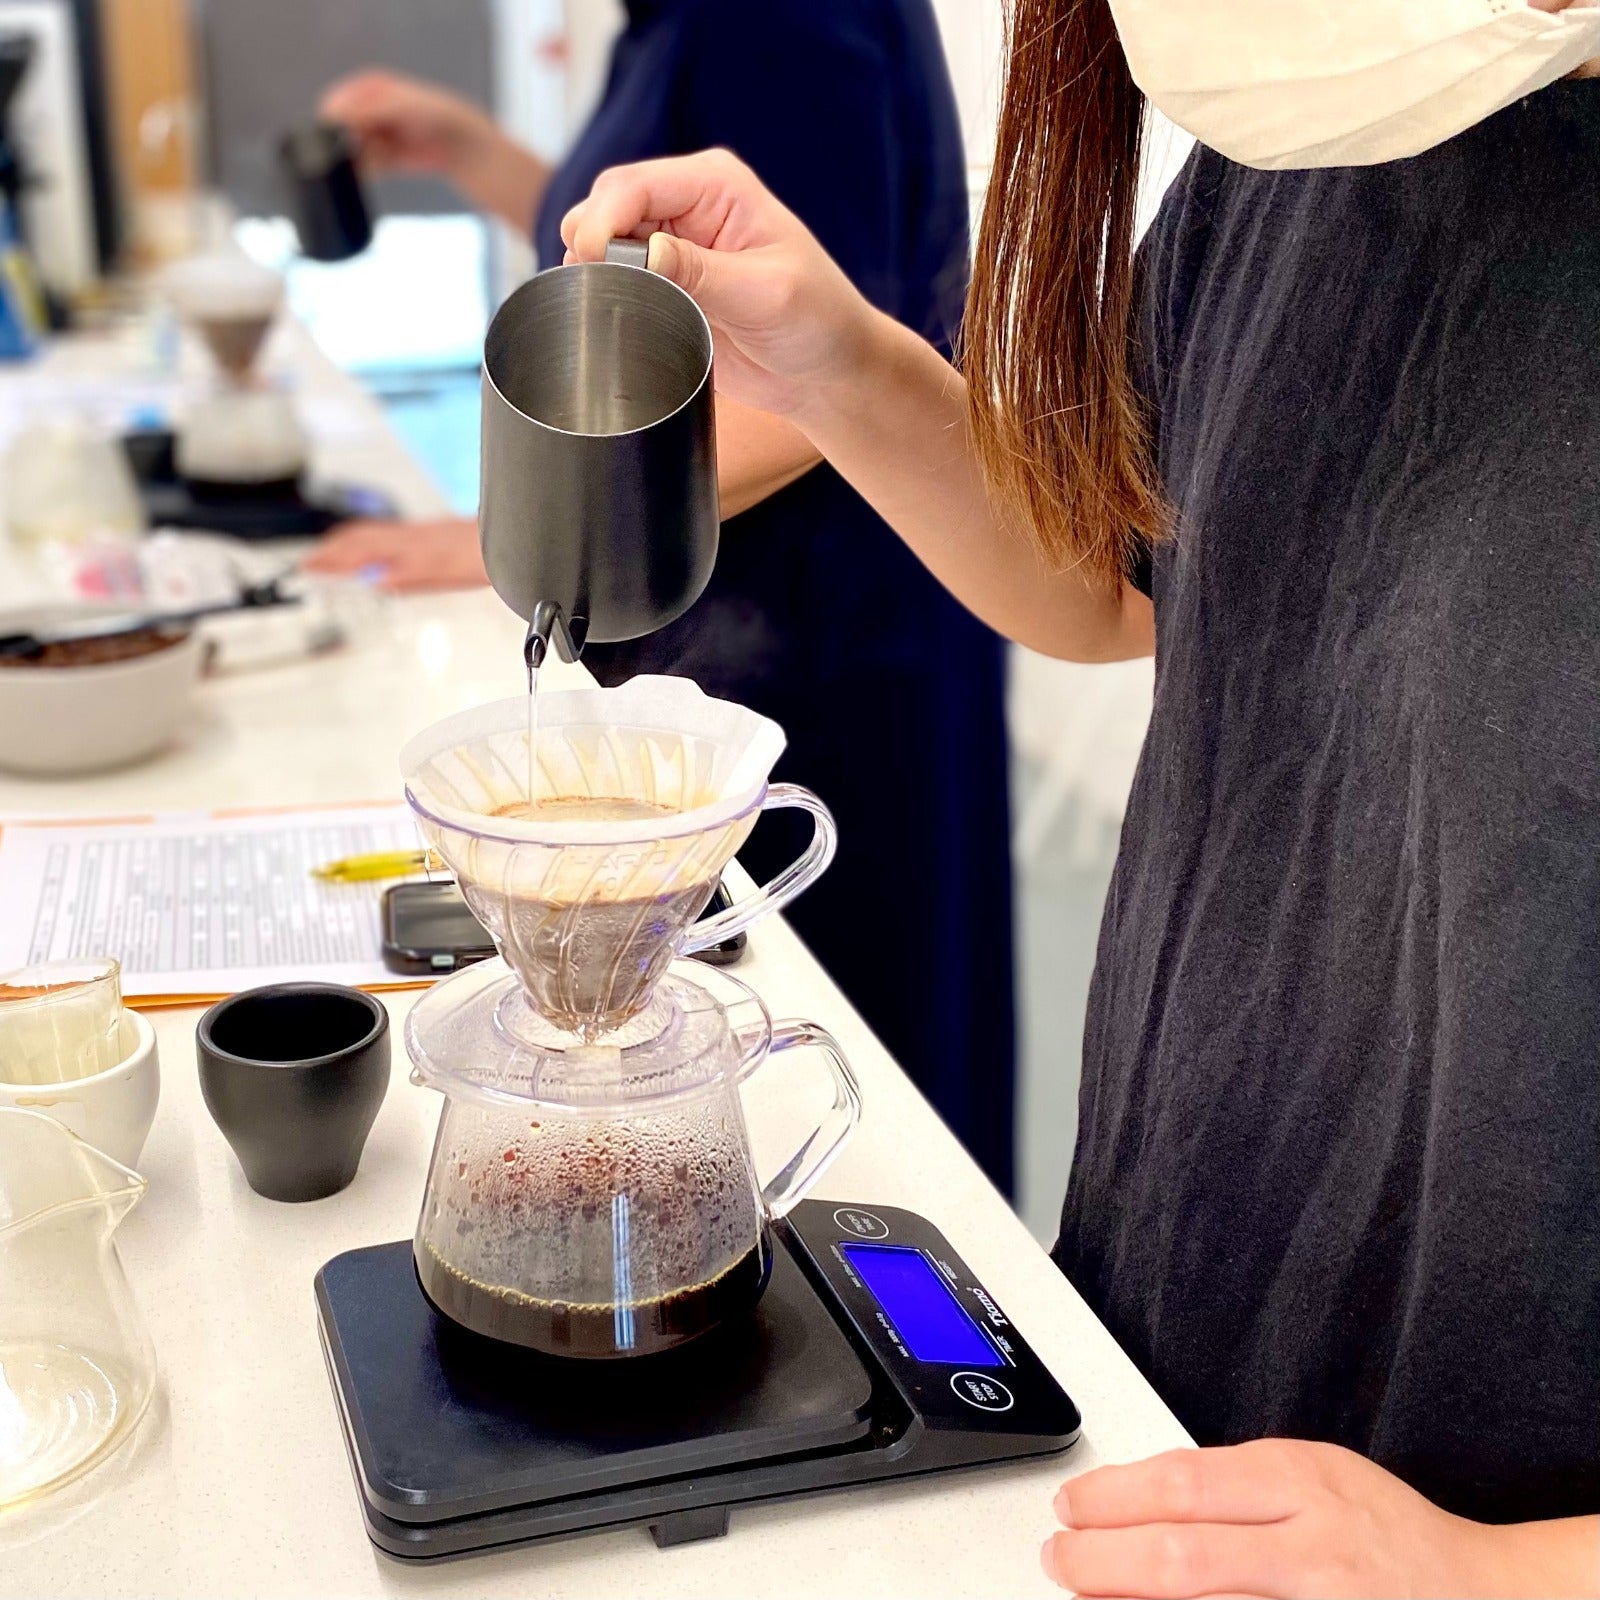 SCA Introduction to Coffee 專業咖啡知識課程｜國際咖啡師認證課程